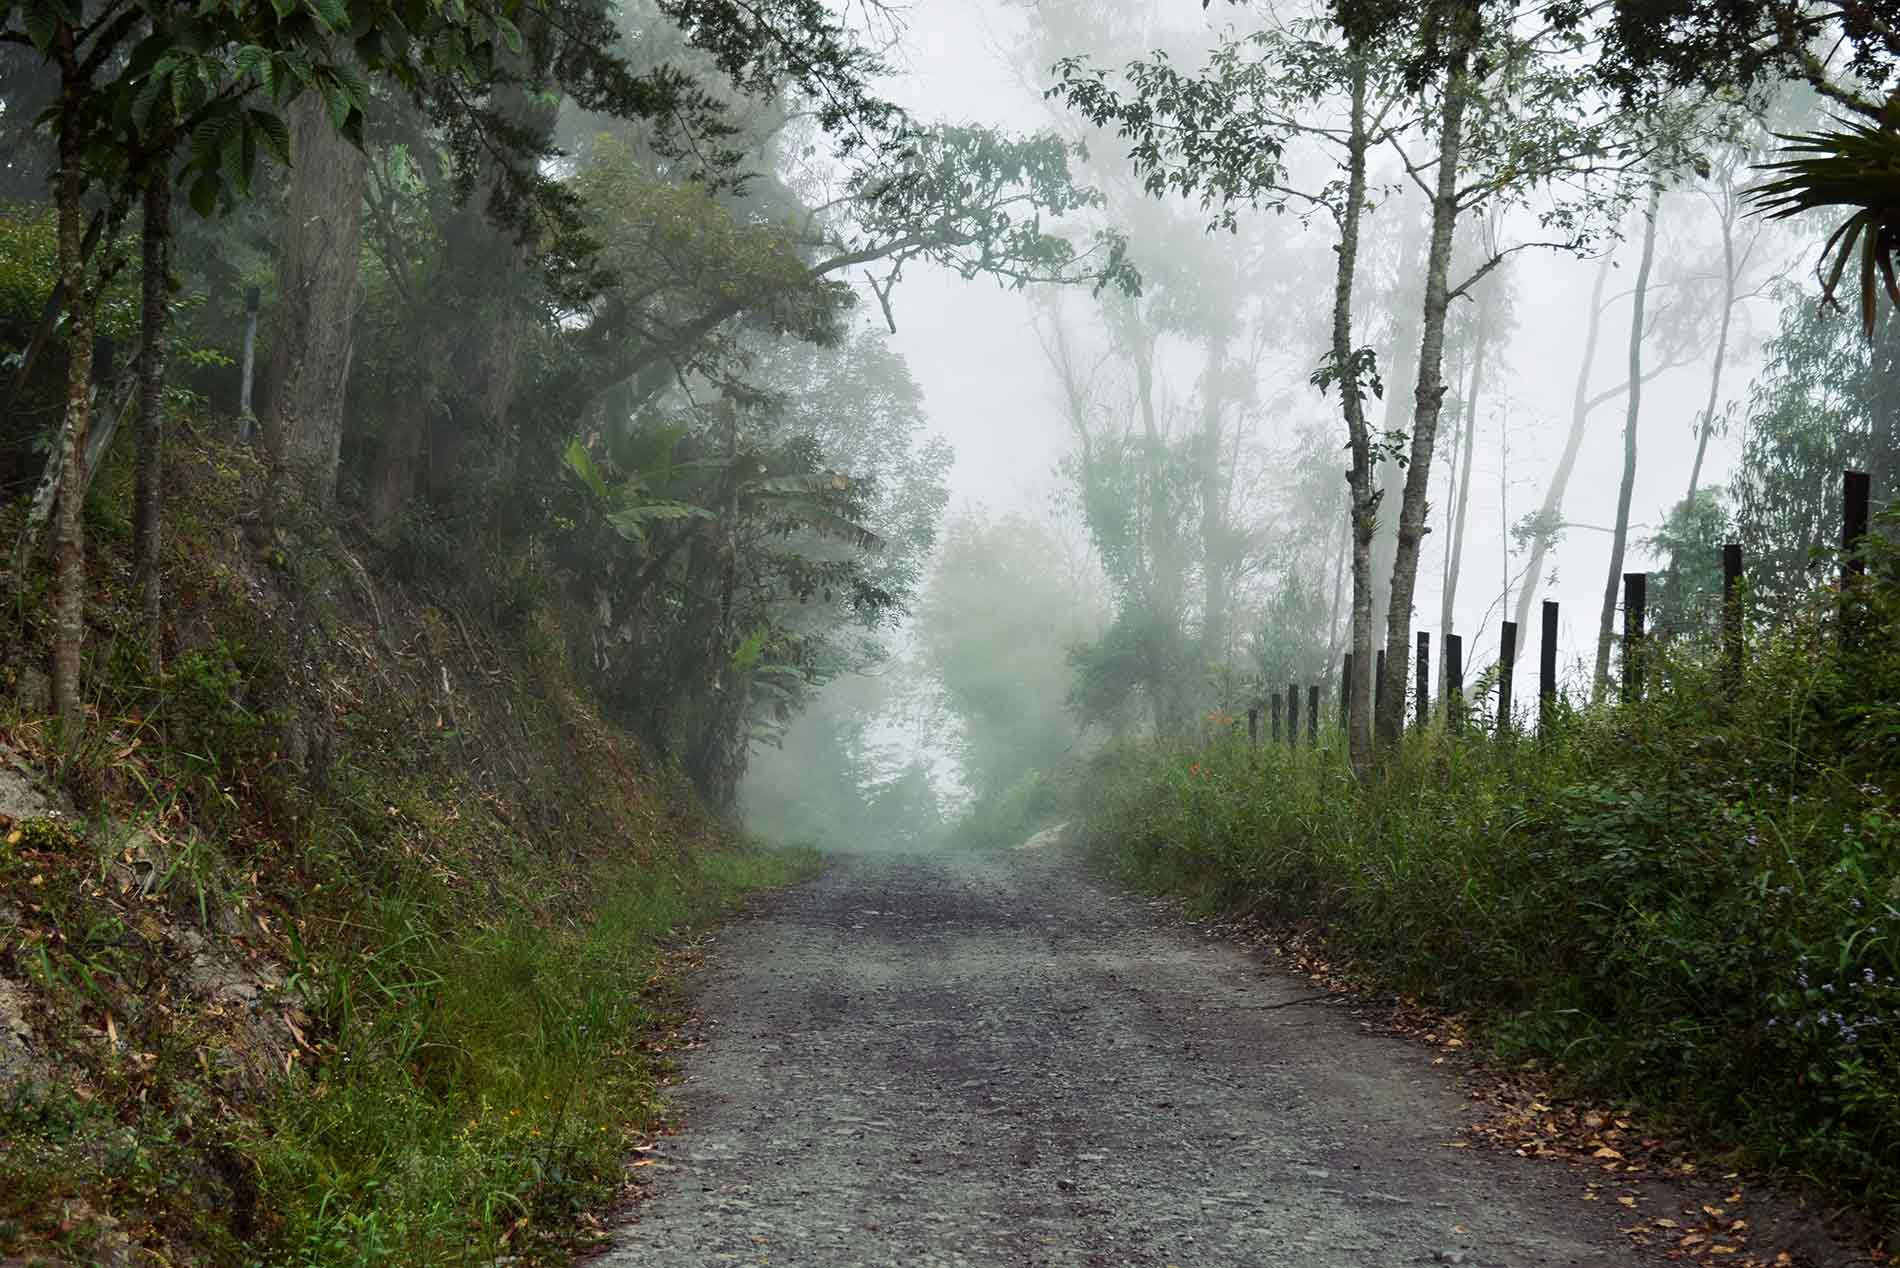 Pequeño camino rural con árboles a los lados y niebla.